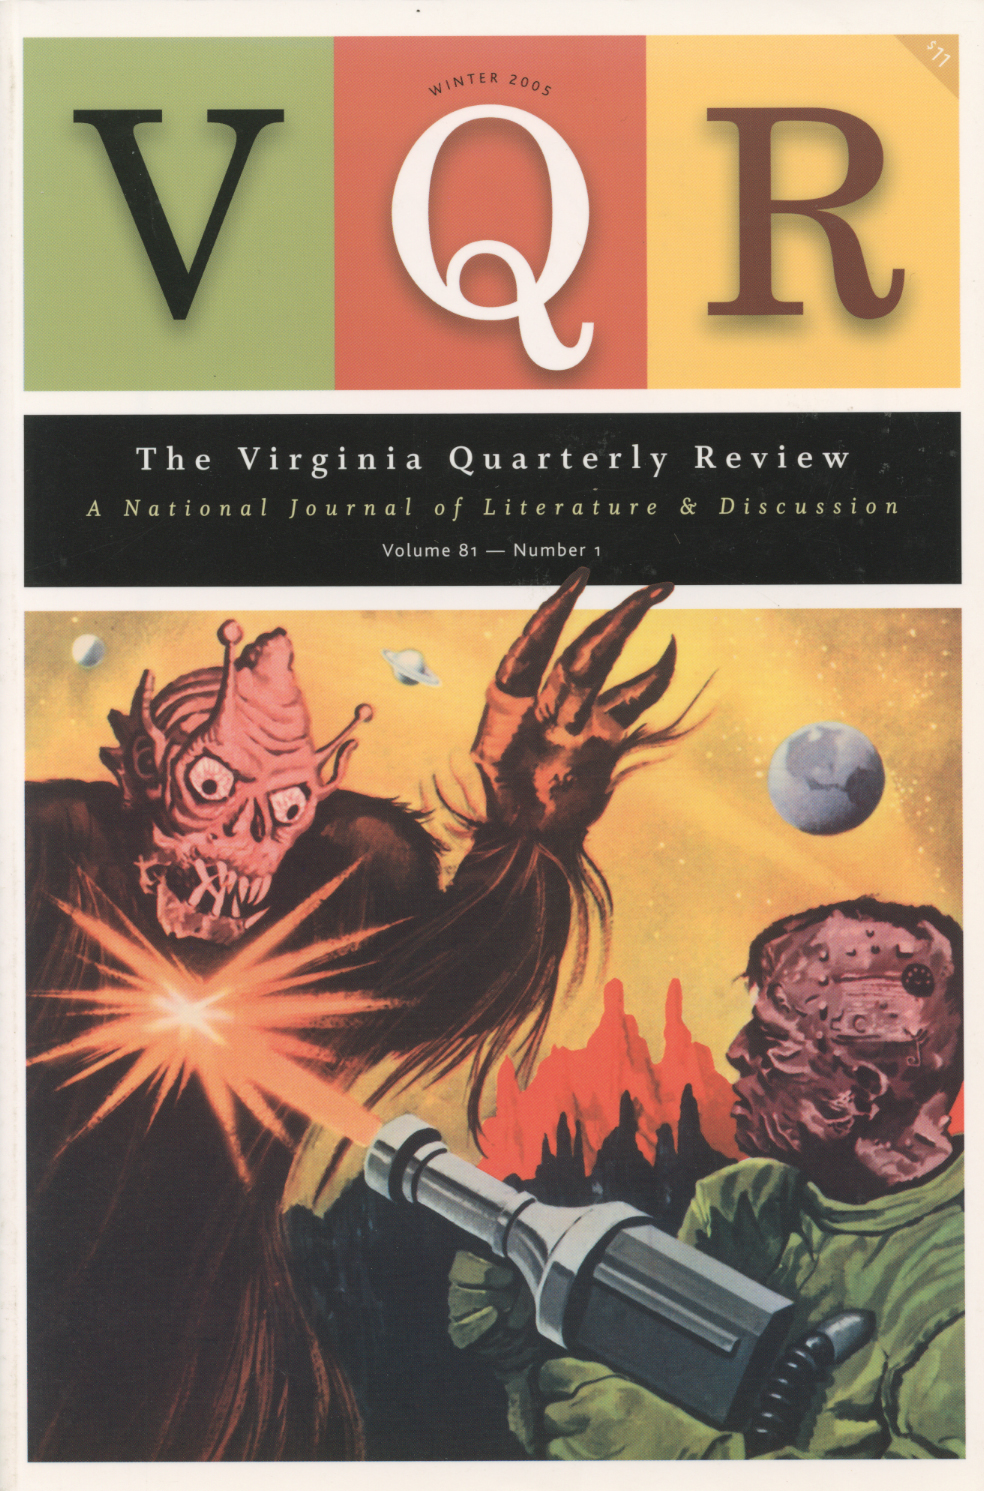 Virginia Quarterly Review, Winter 2005 cover